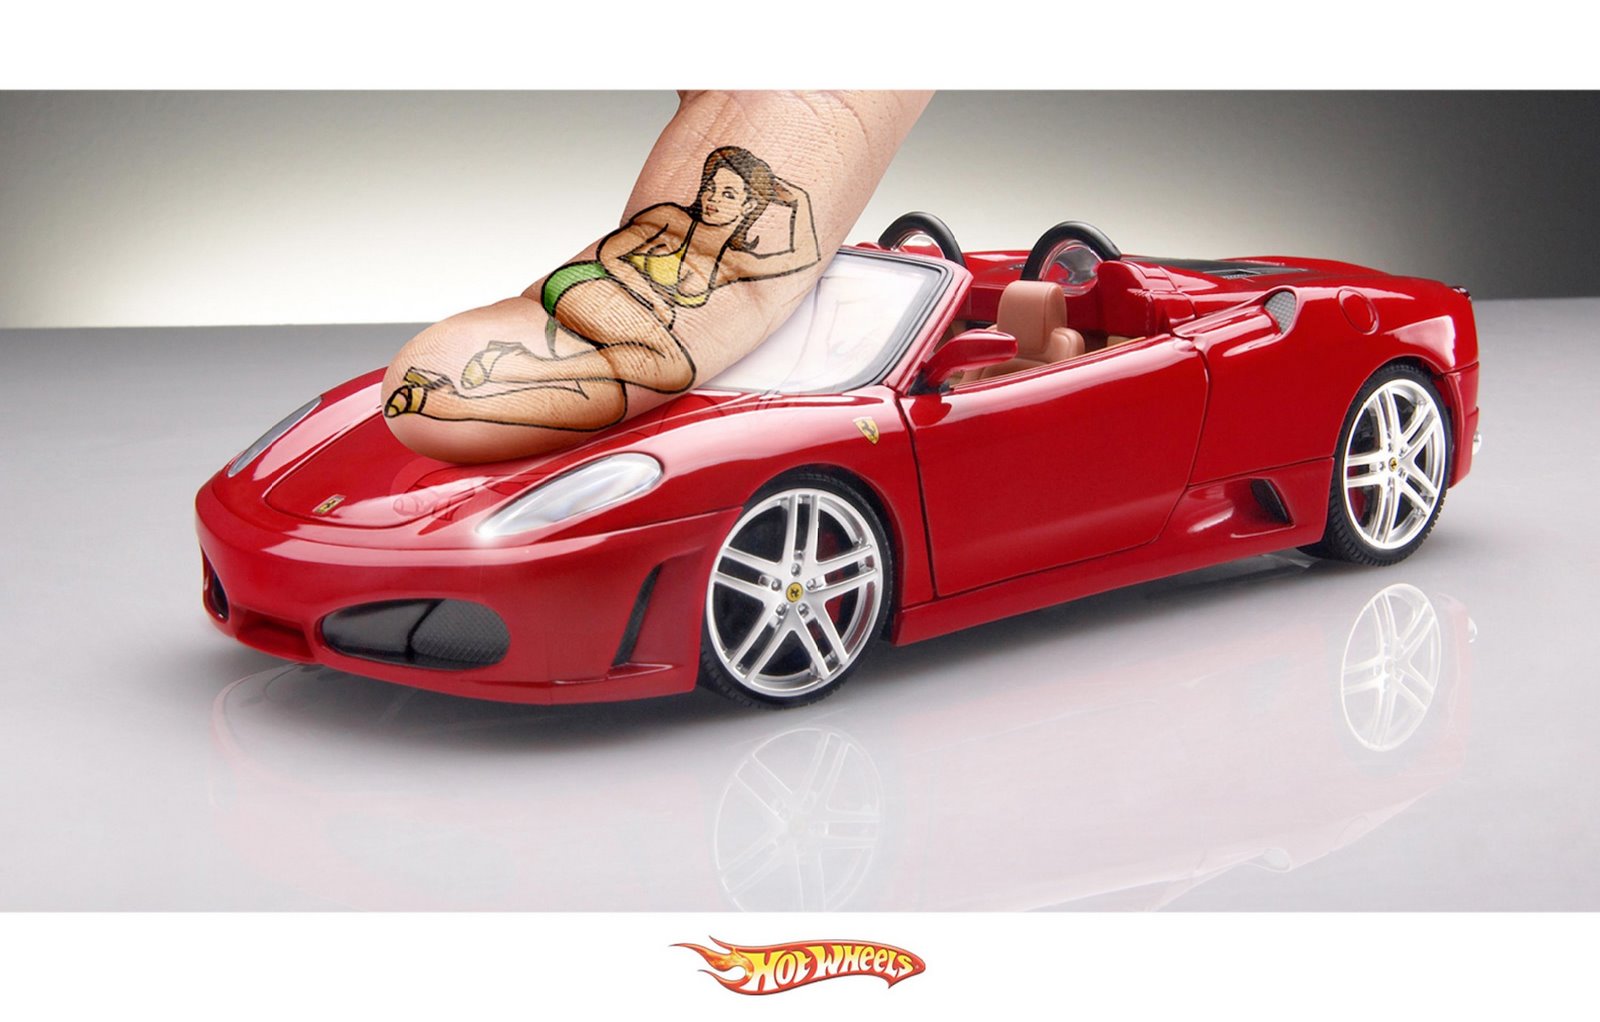 Hot Wheels Red Ferrari and Finger Art